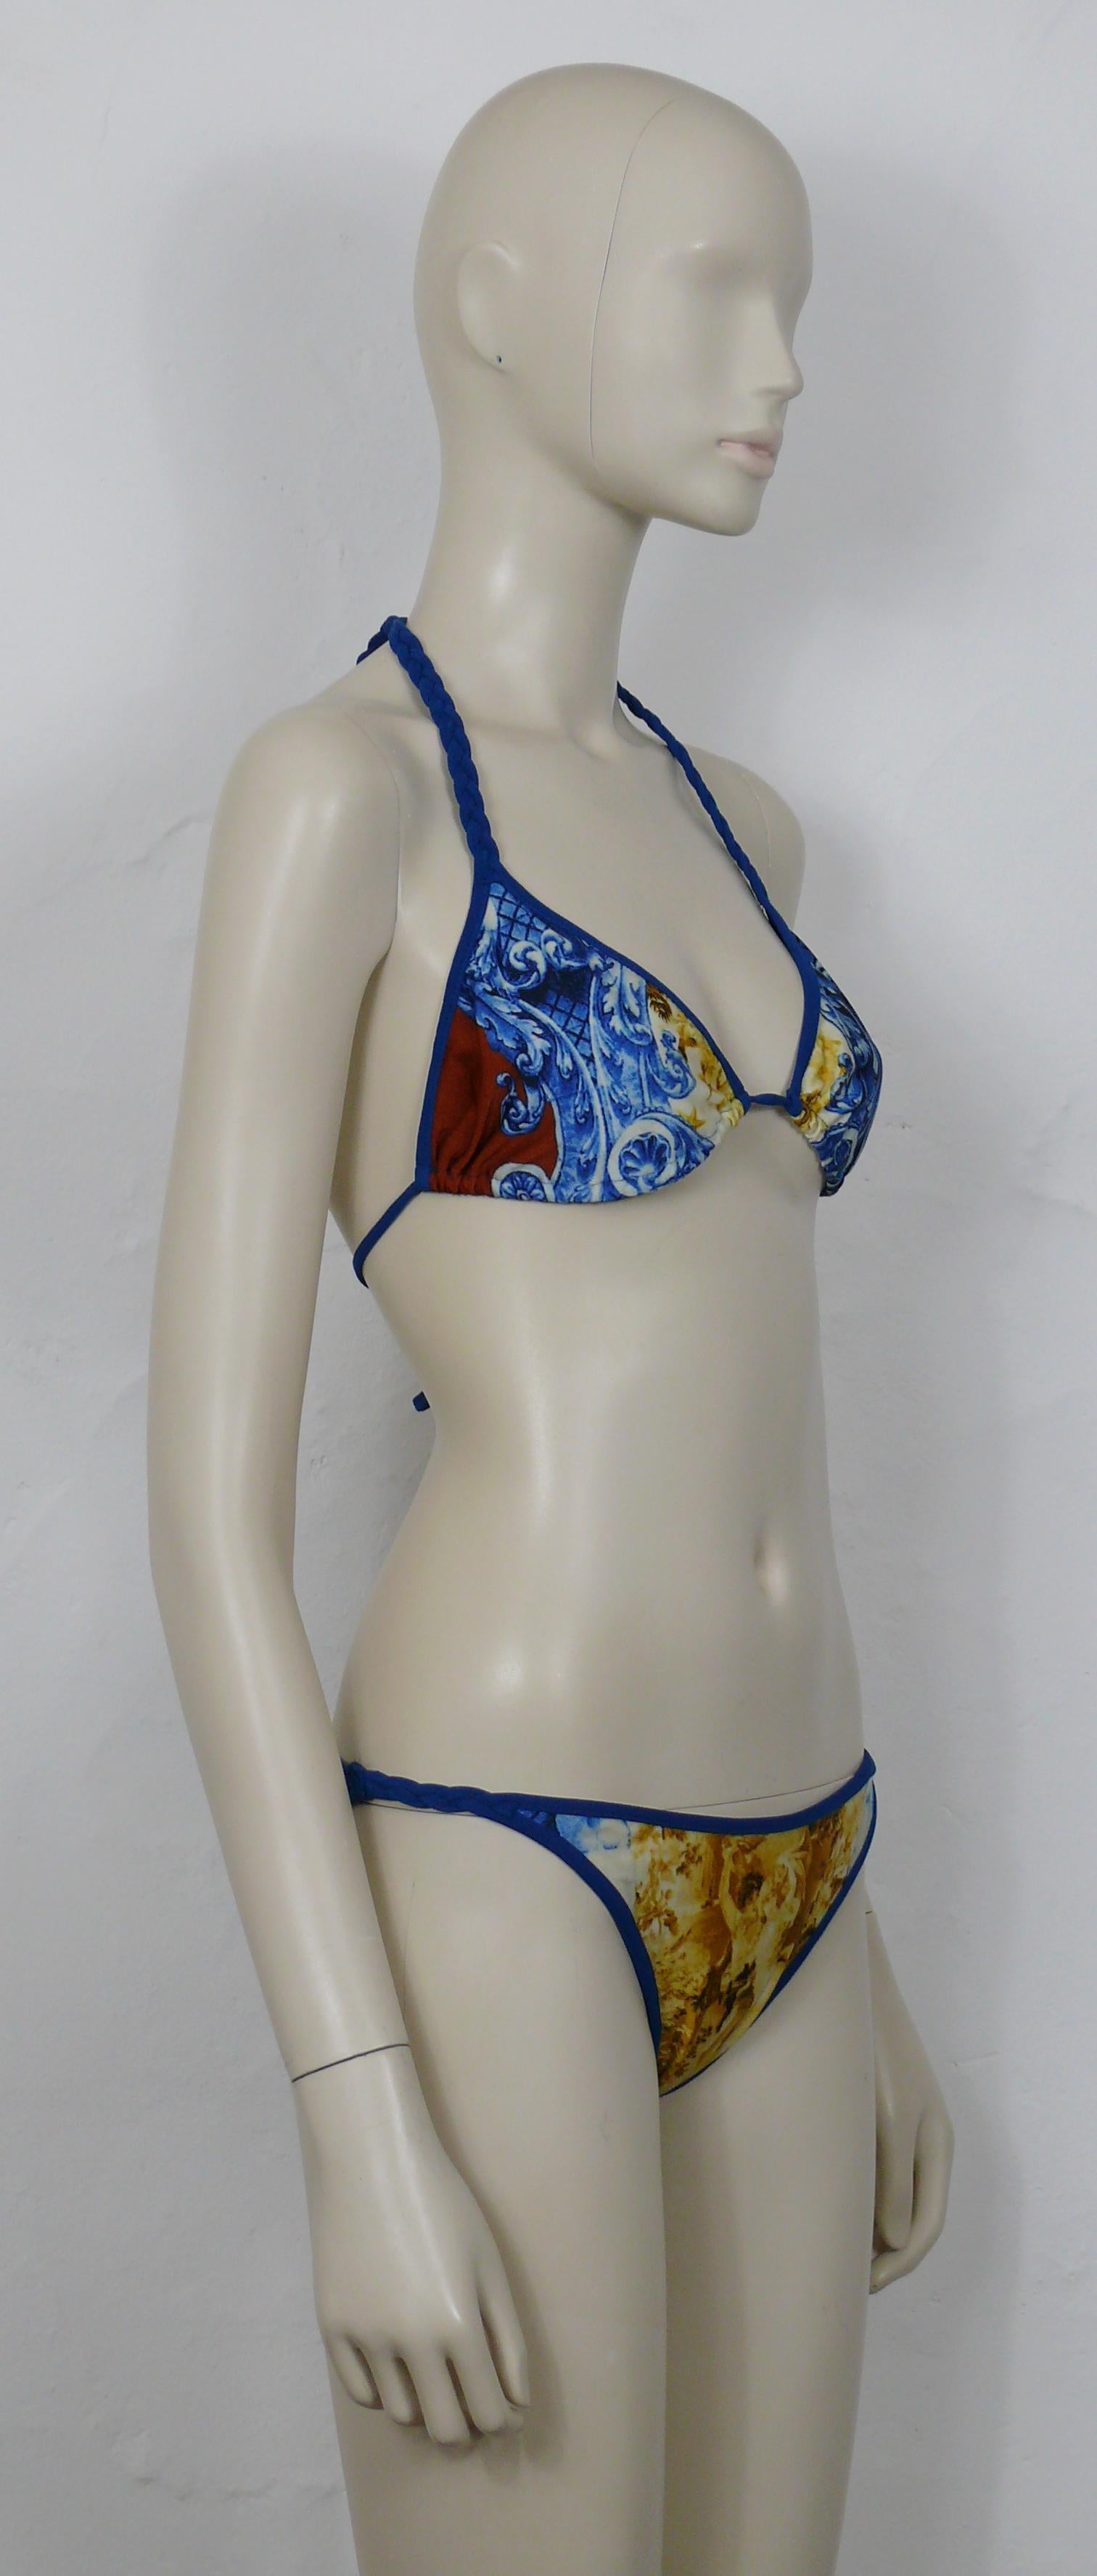 Zweiteiliger Bikini-Badeanzug von JEAN PAUL GAULTIER im Vintage-Stil mit mehrfarbigem Print mit architektonischen Elementen, einem Liebespaar, Putten und GAULTIER-Logo.

Blaue geflochtene Seile als Detail.

Auf dem Etikett steht JEAN PAUL GAULTIER